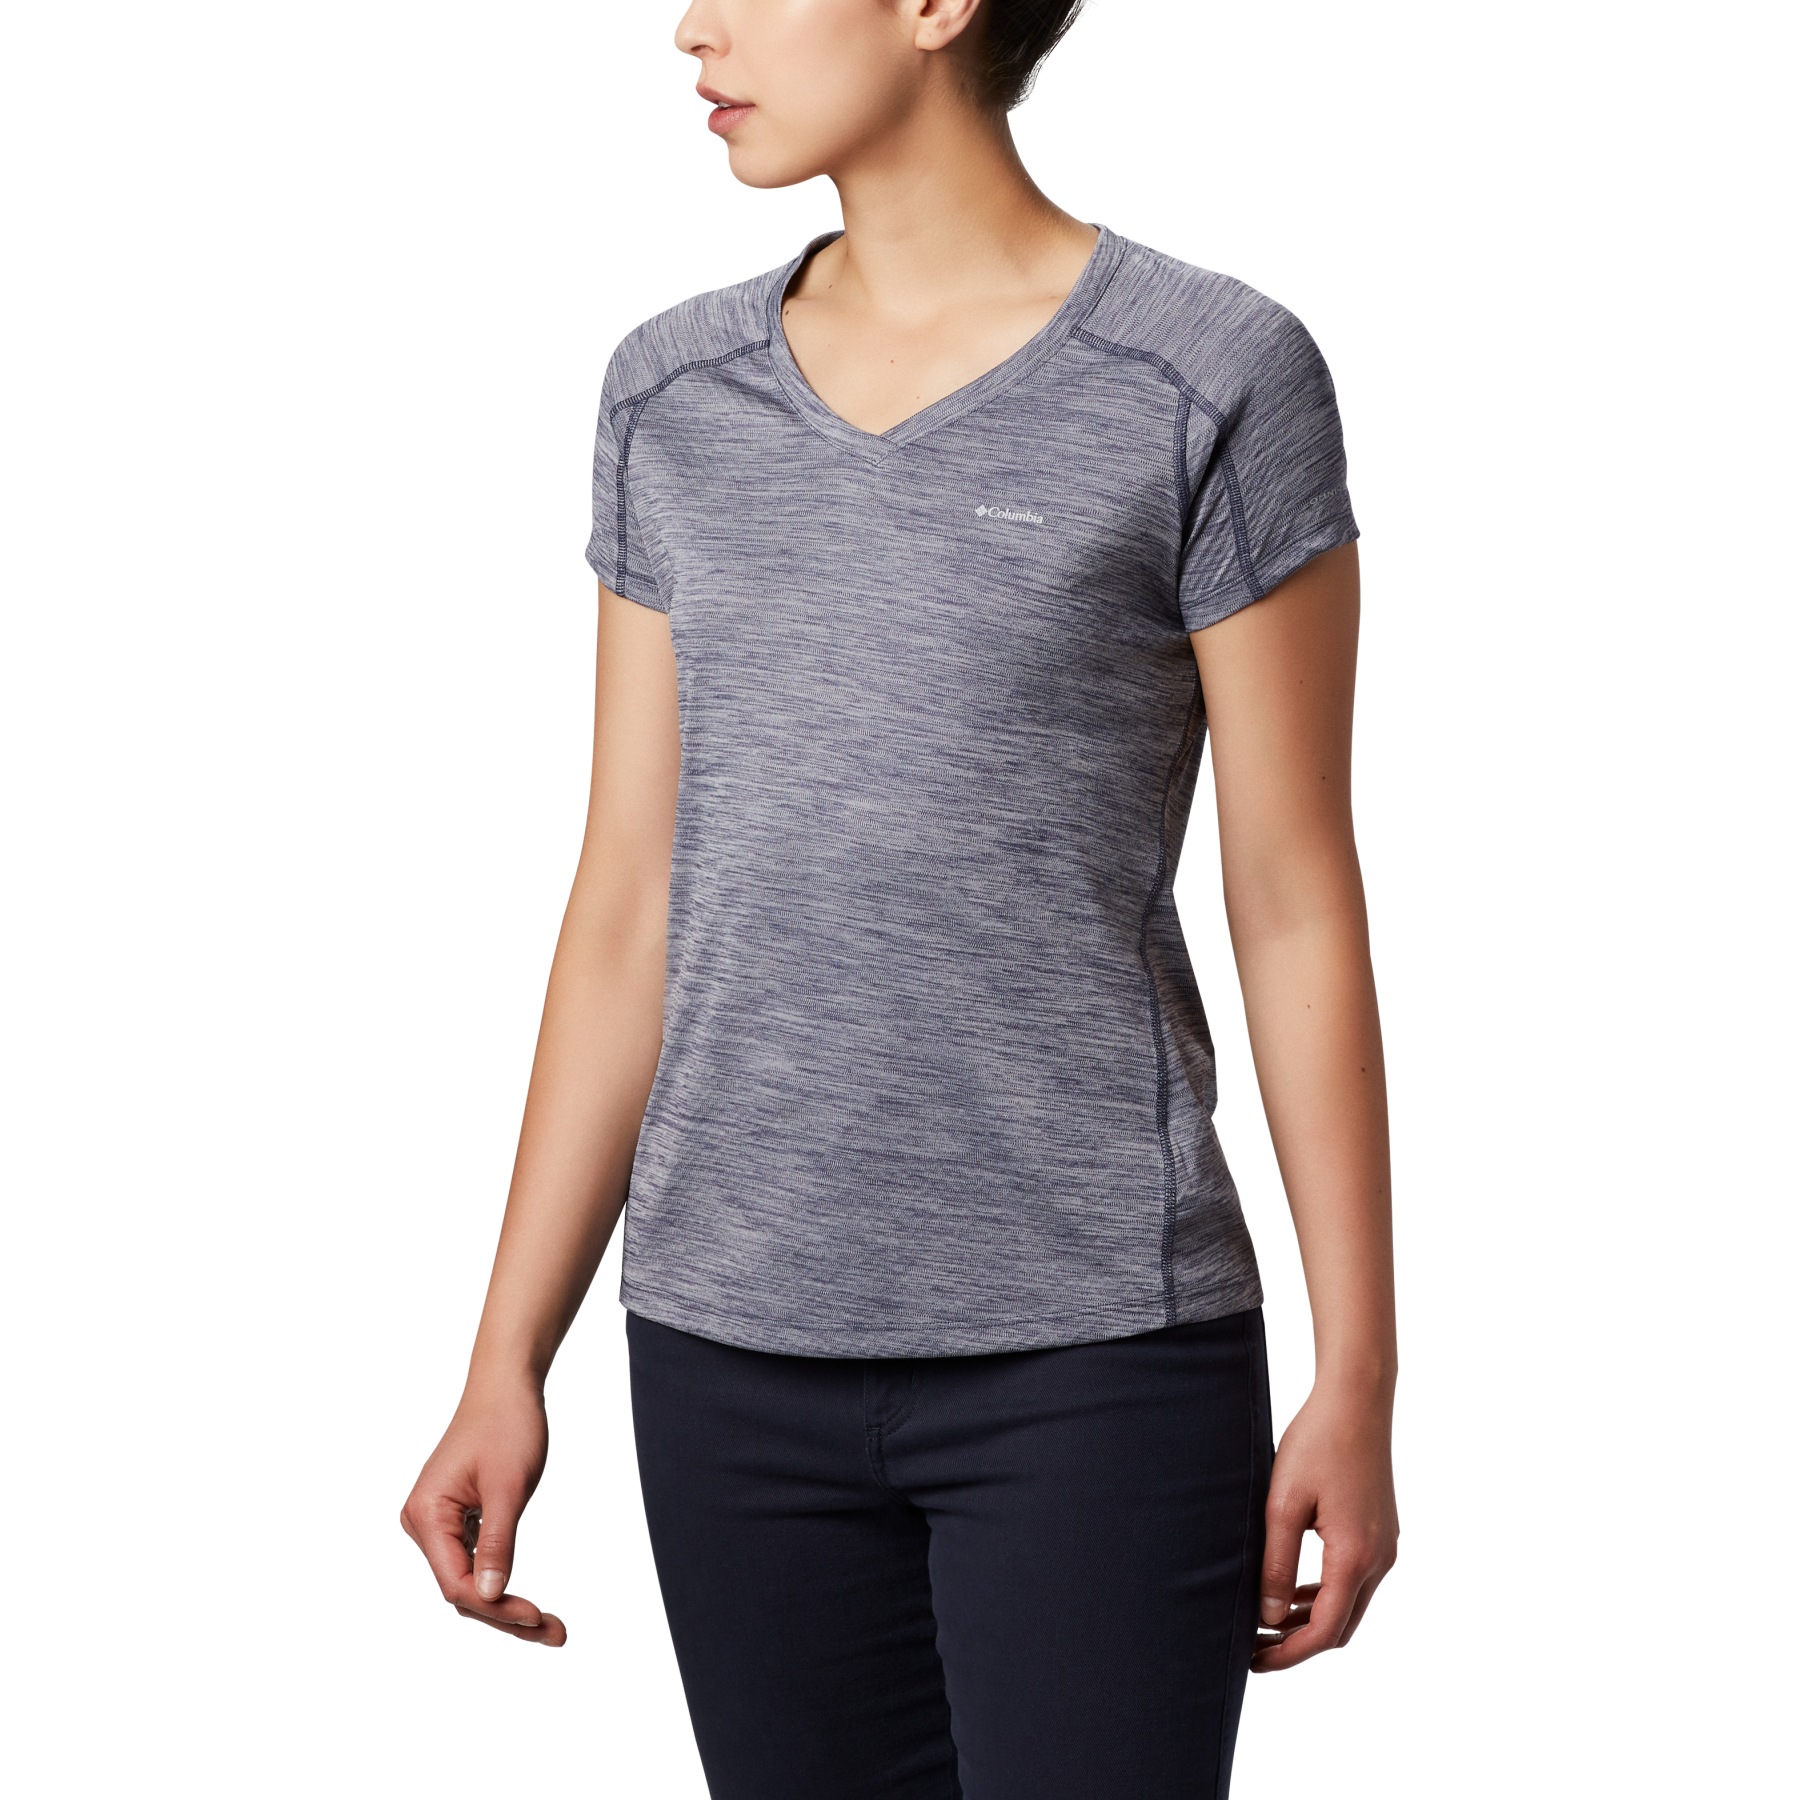 Produktbild von Columbia Zero Rules T-Shirt Damen - Nocturnal Heather